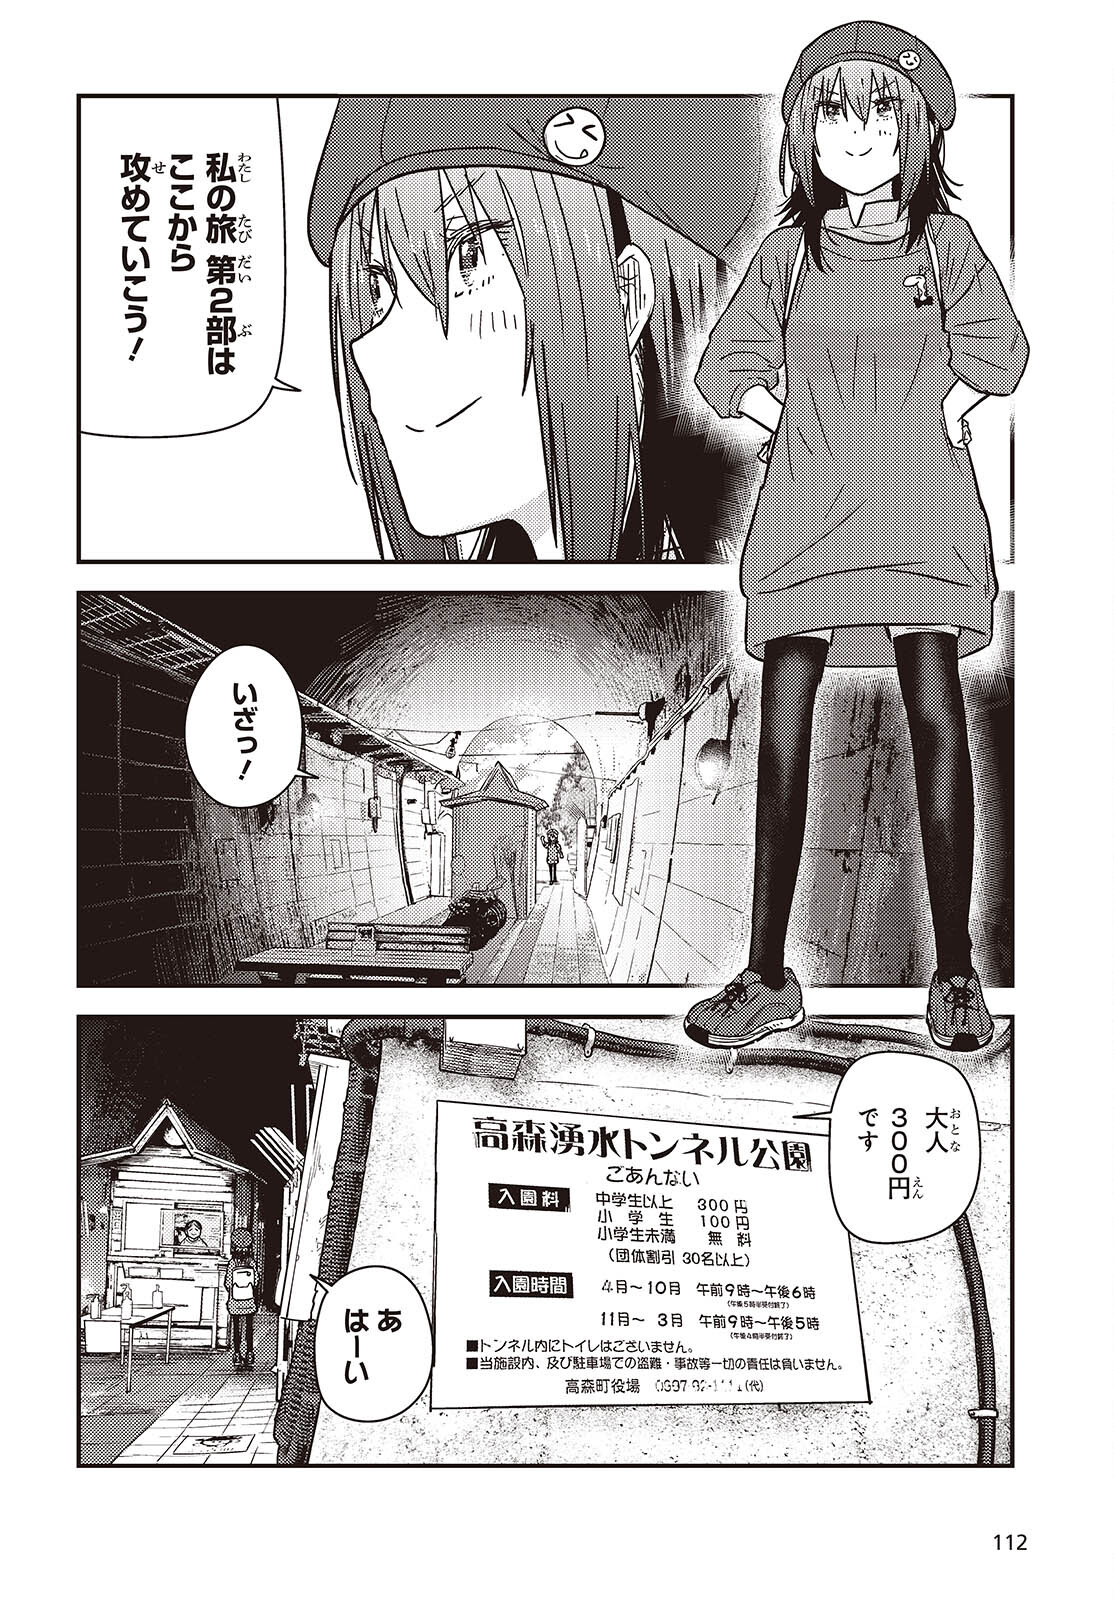 ざつ旅-That’s Journey- 第35話 - Page 2